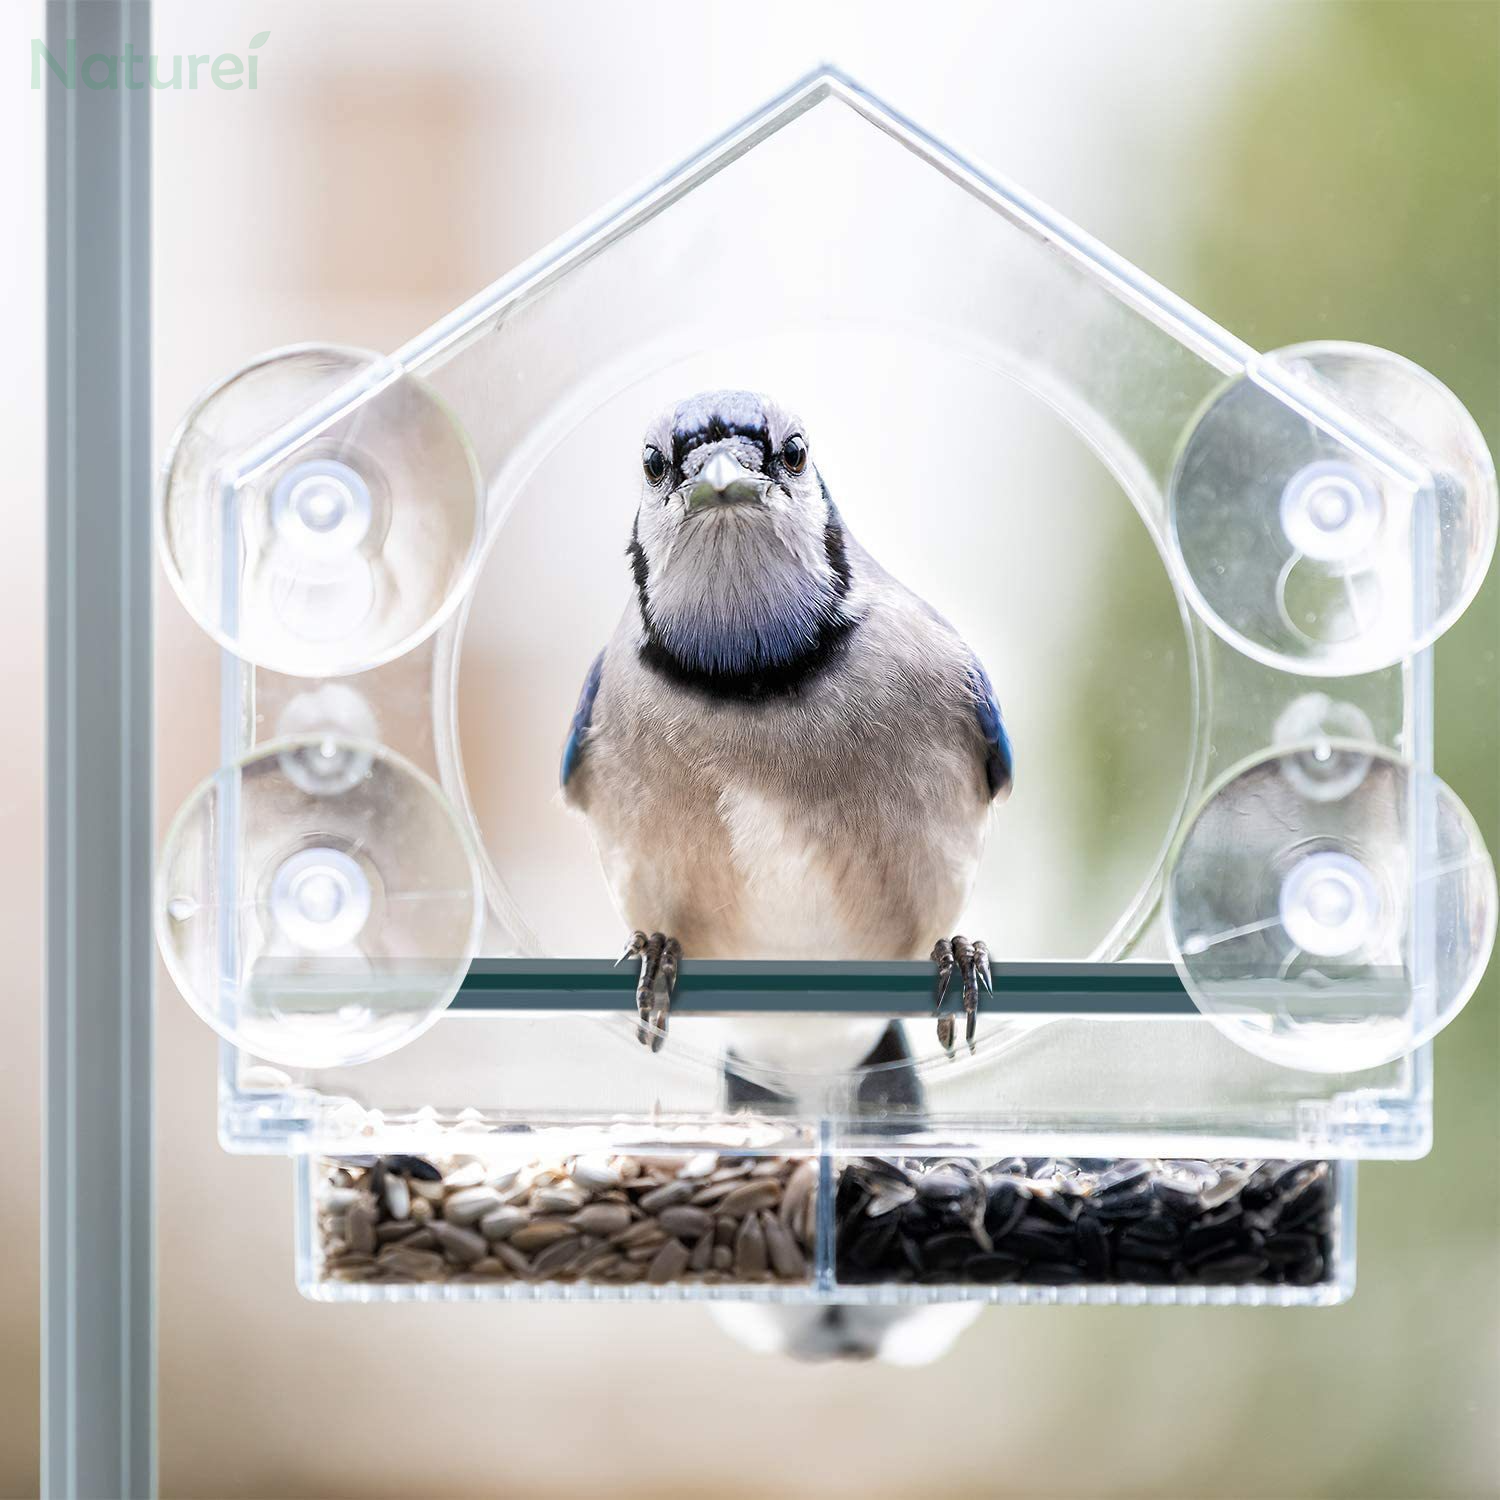 Window Bird Feeder